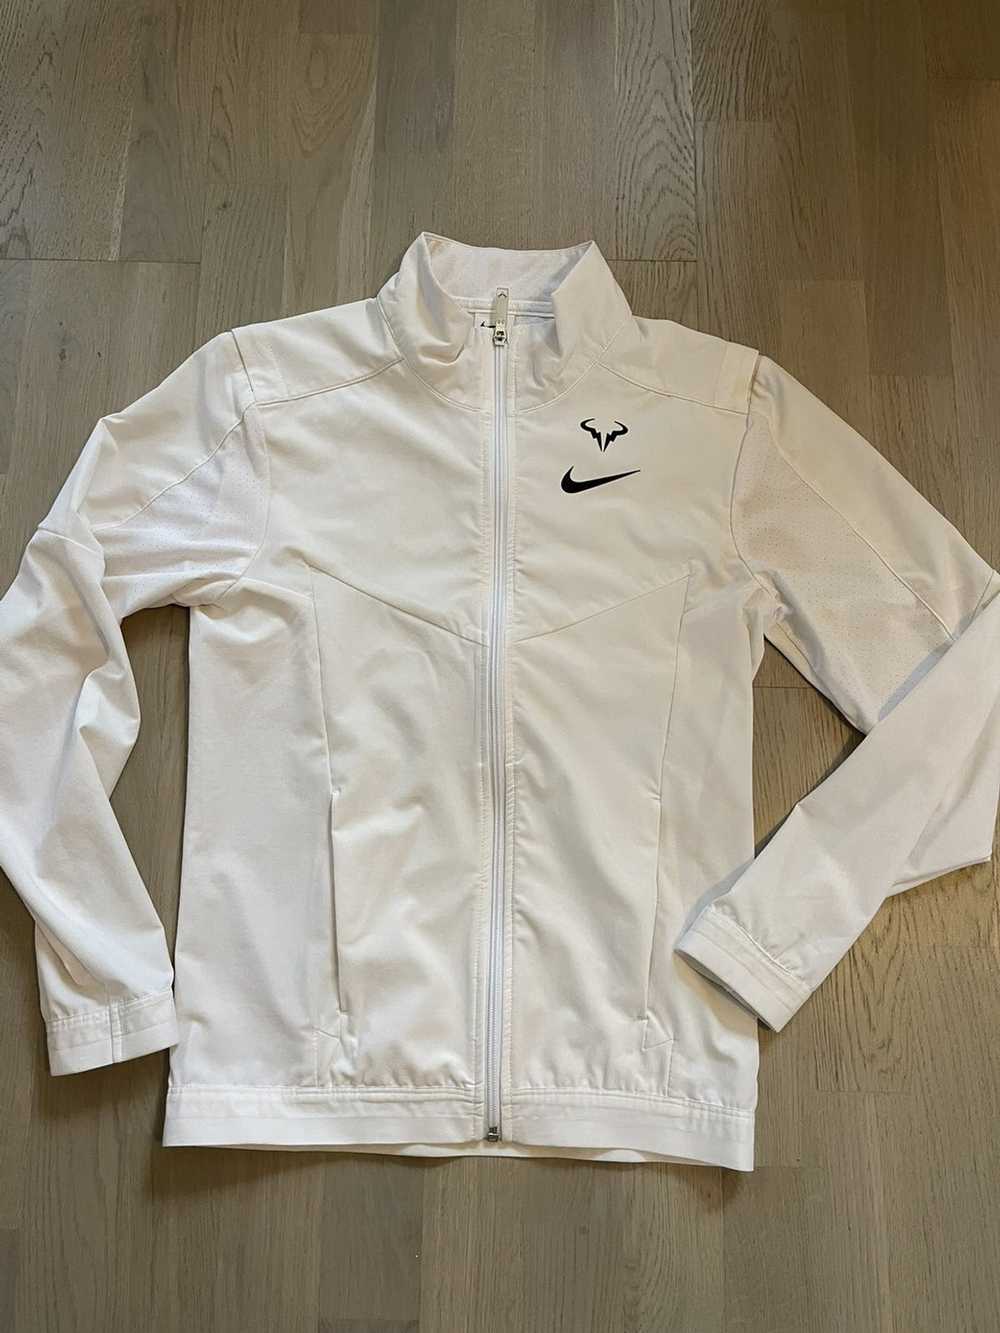 Nike NIKE x RAFA NADAL track jacket sizes in phot… - image 2